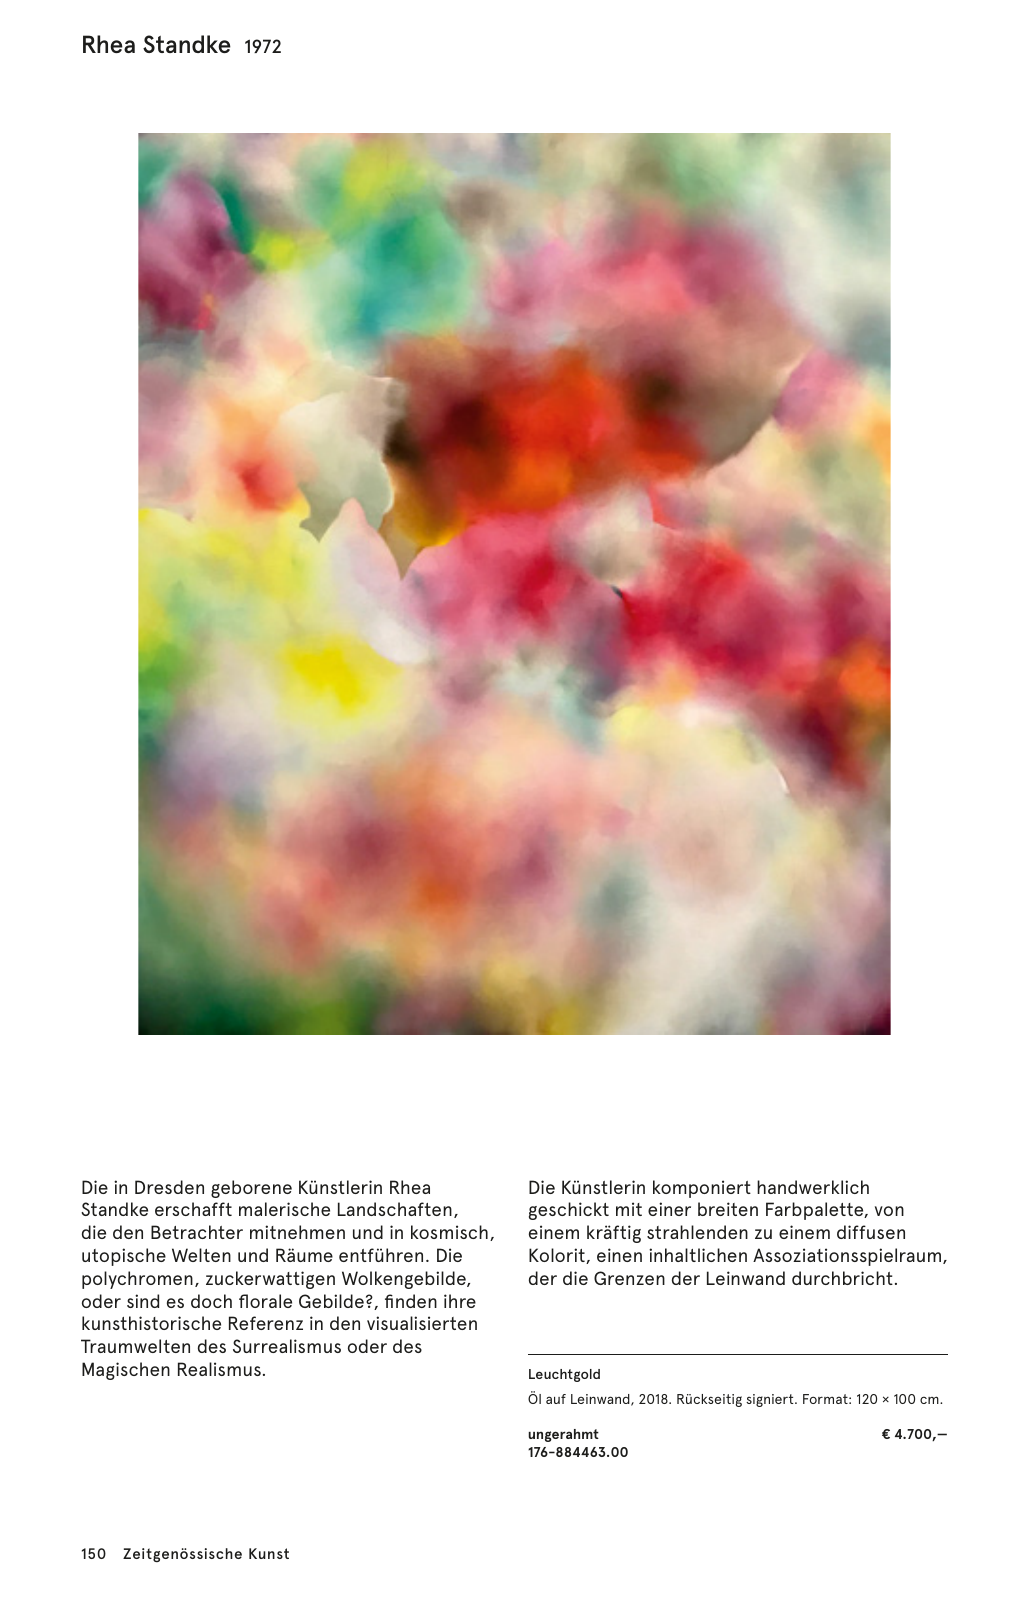 Vorschau Artes Katalog Winter 2018_19_Vollversion Seite 152